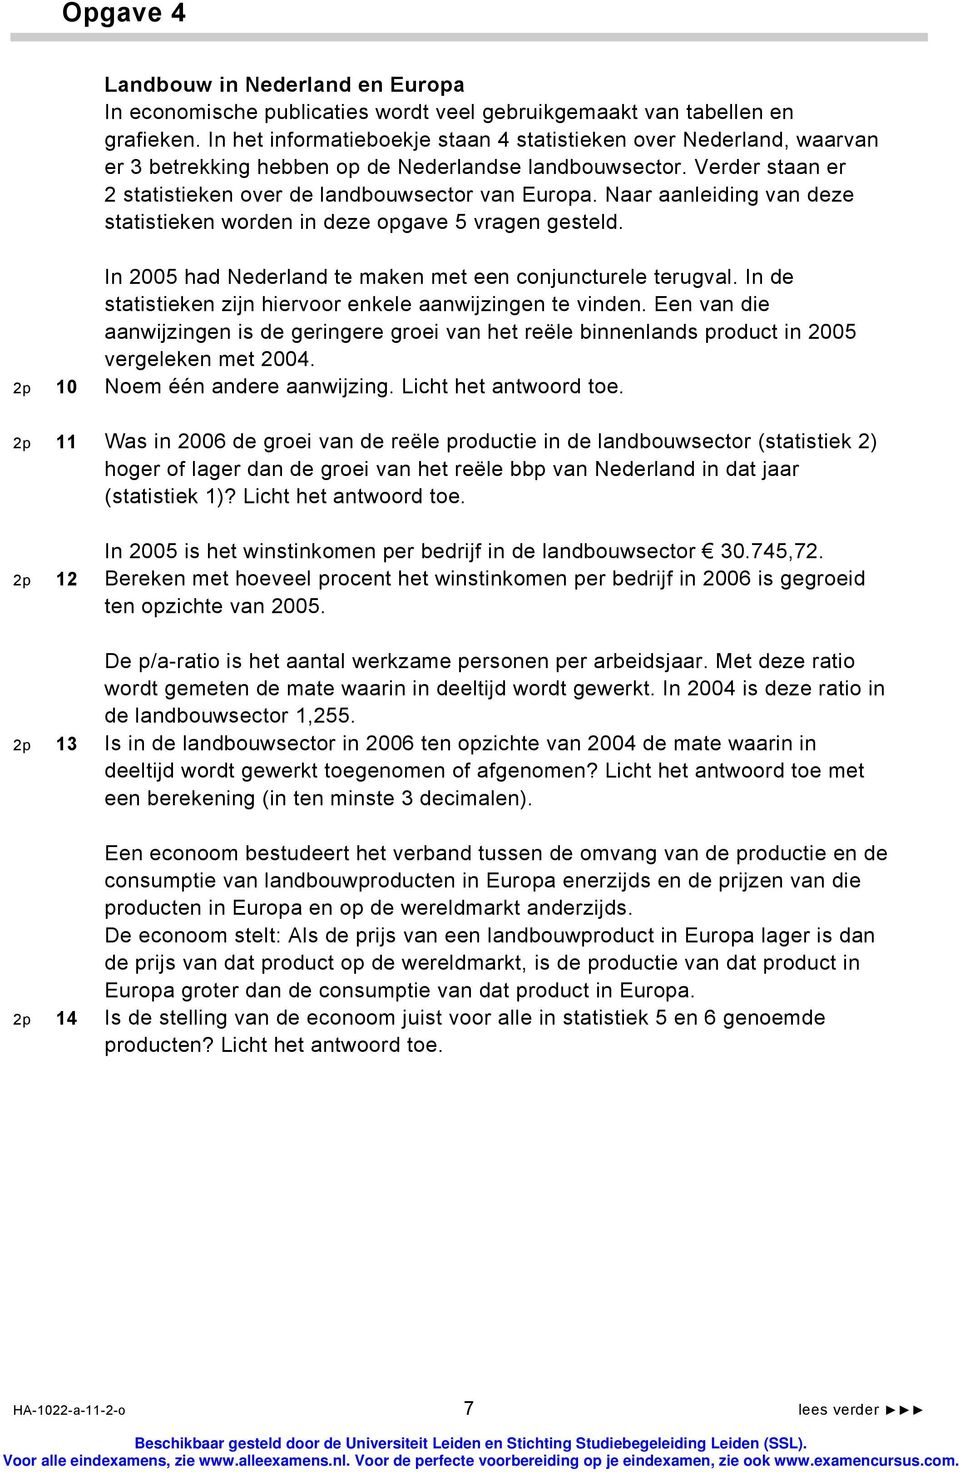 Naar aanleiding van deze statistieken worden in deze opgave vragen gesteld. In 200 had Nederland te maken met een conjuncturele terugval.